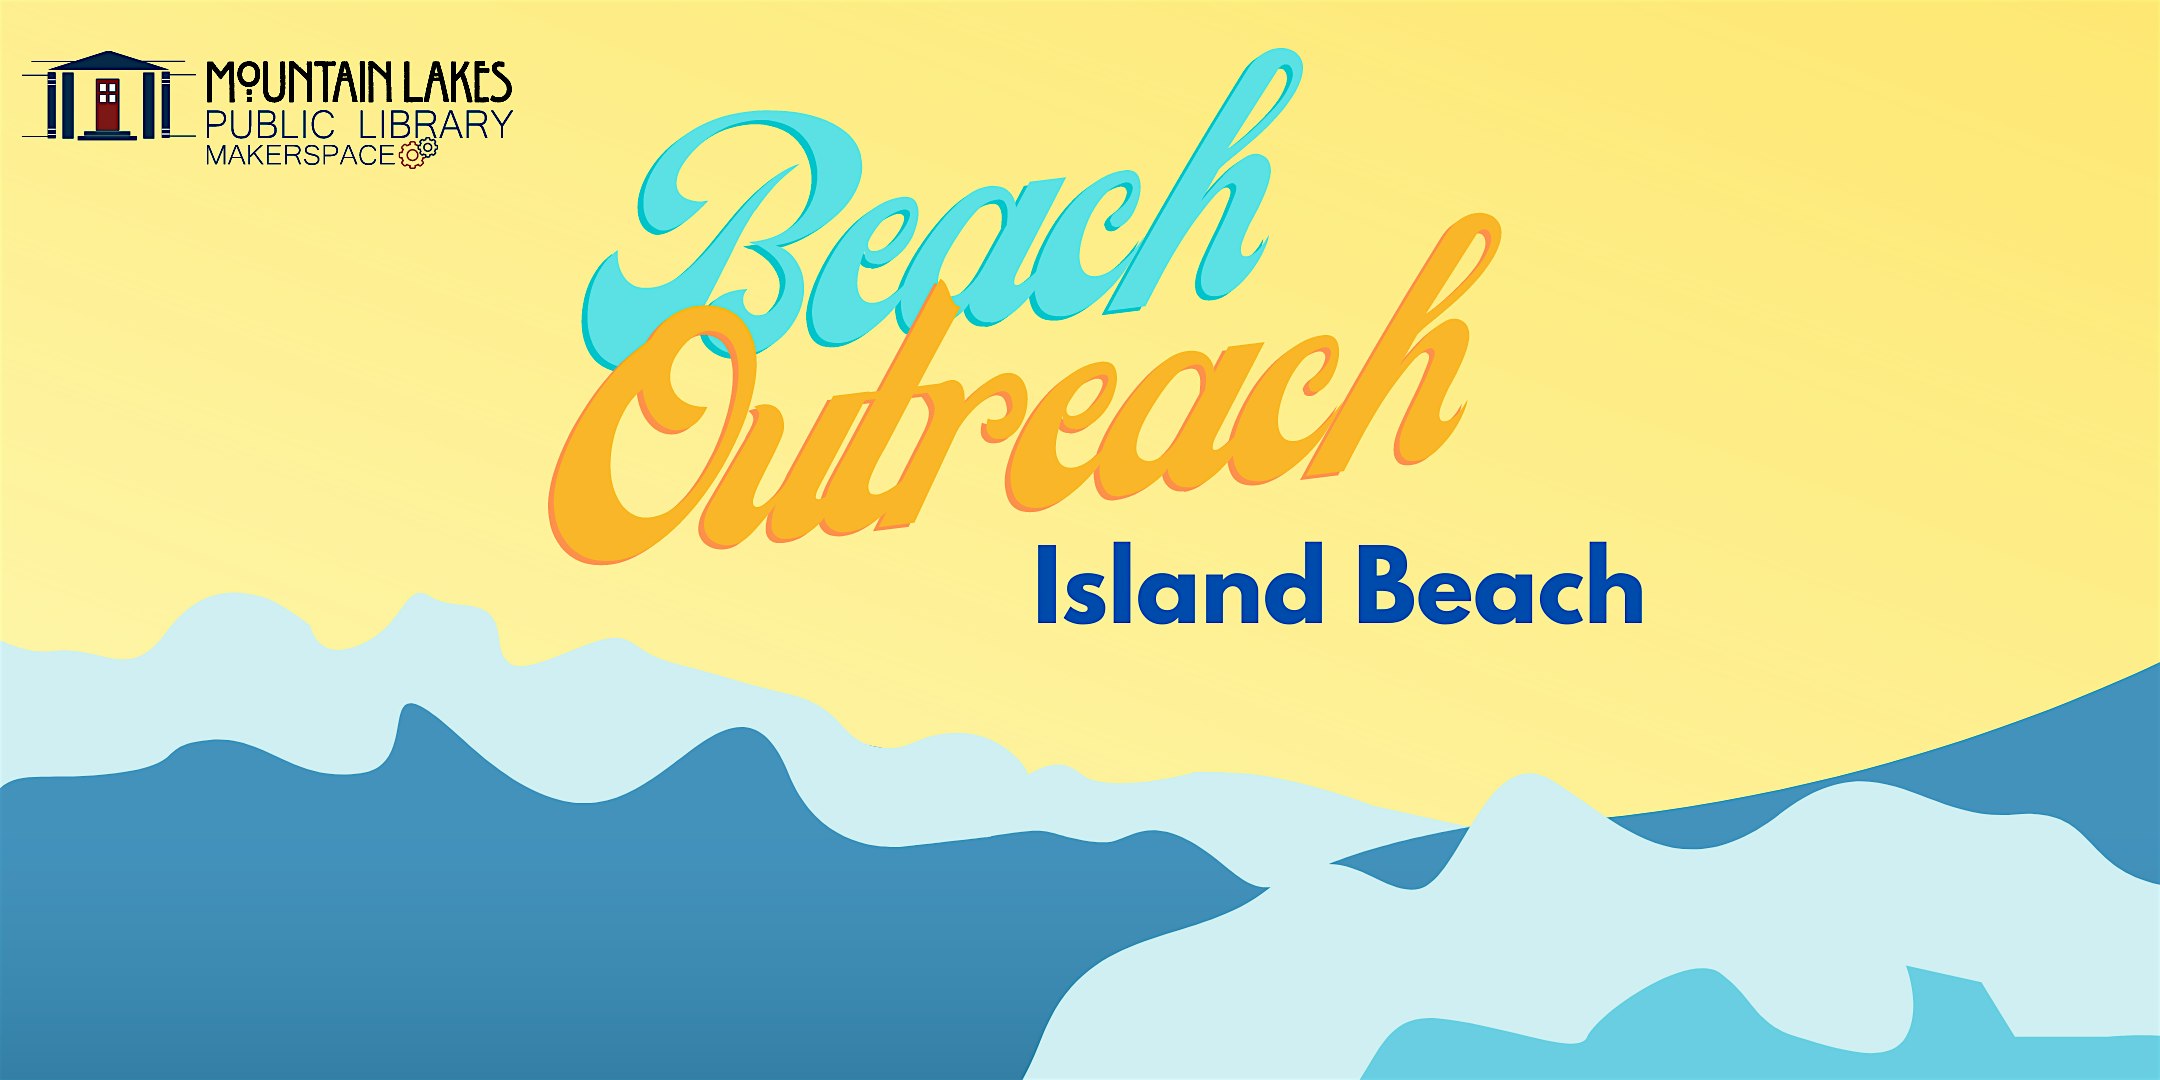 Outreach at Island Beach